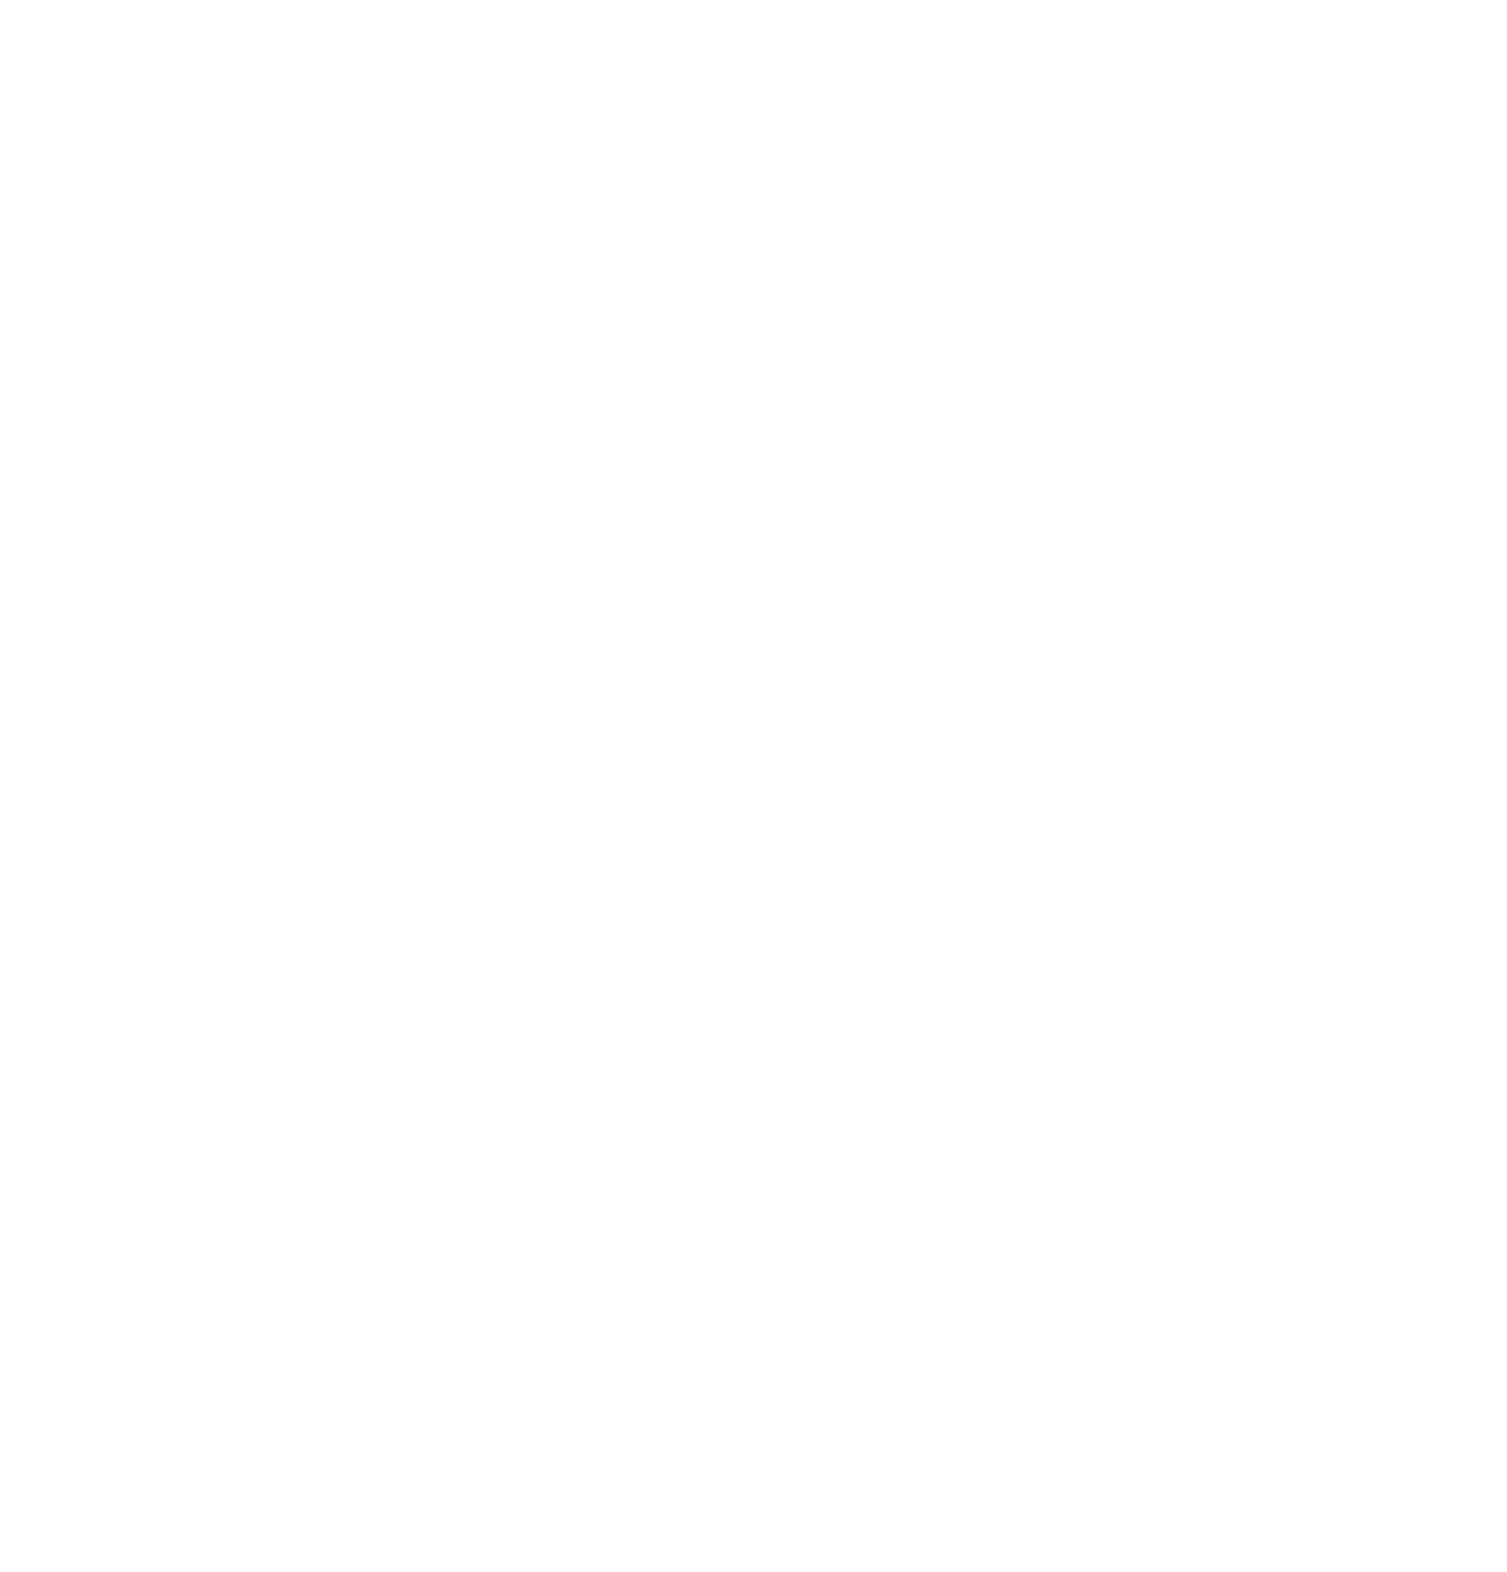 Bed Bath & Beyond logo pour fonds sombres (PNG transparent)